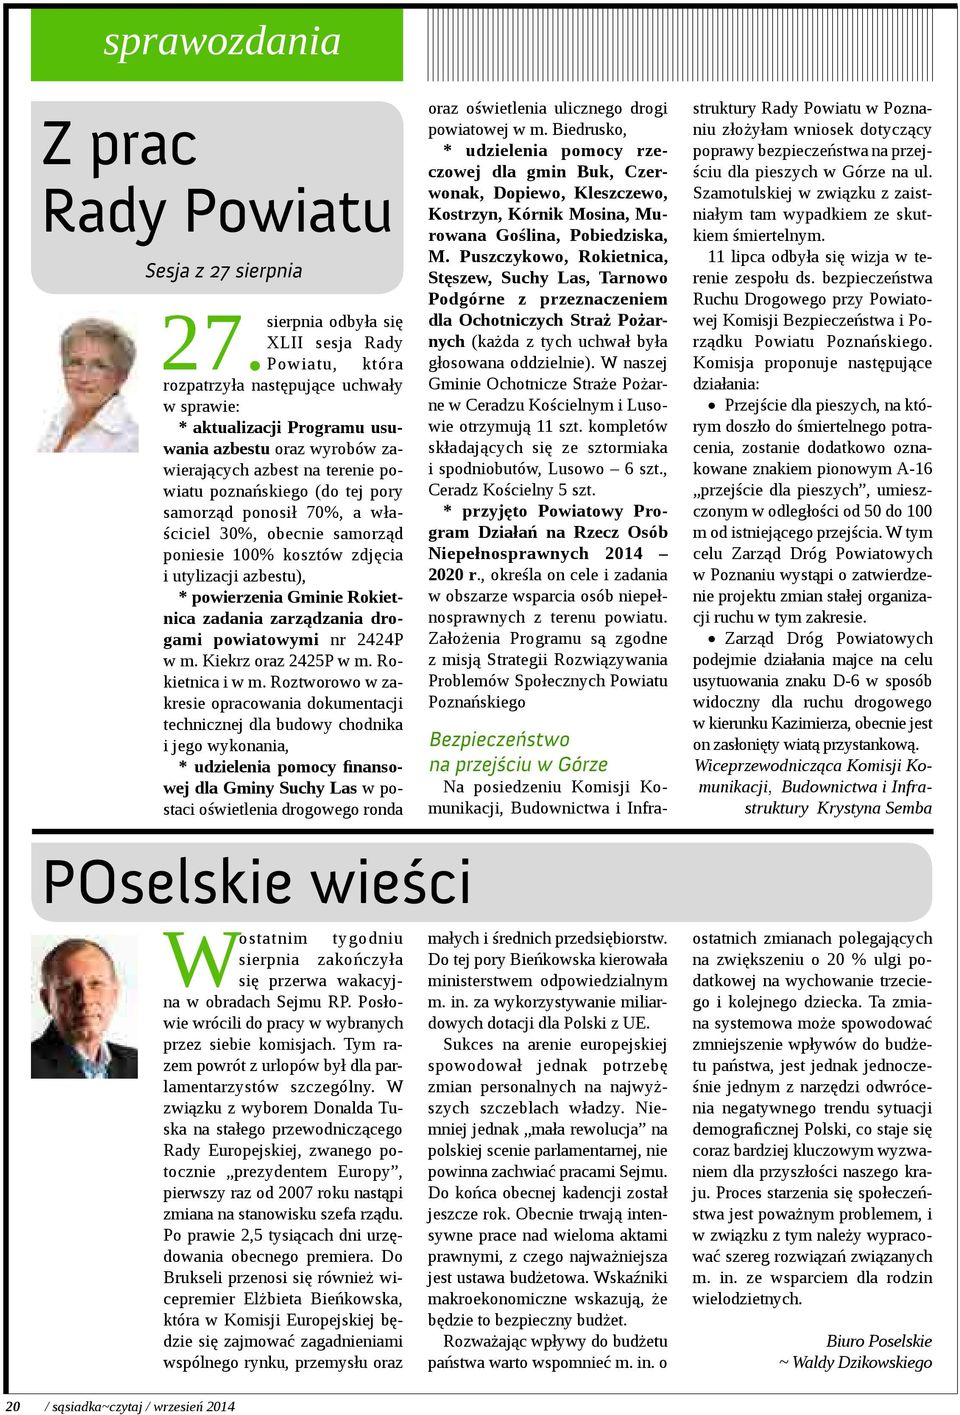 poznańskiego (do tej pory samorząd ponosił 70%, a właściciel 30%, obecnie samorząd poniesie 100% kosztów zdjęcia i utylizacji azbestu), * powierzenia Gminie Rokietnica zadania zarządzania drogami